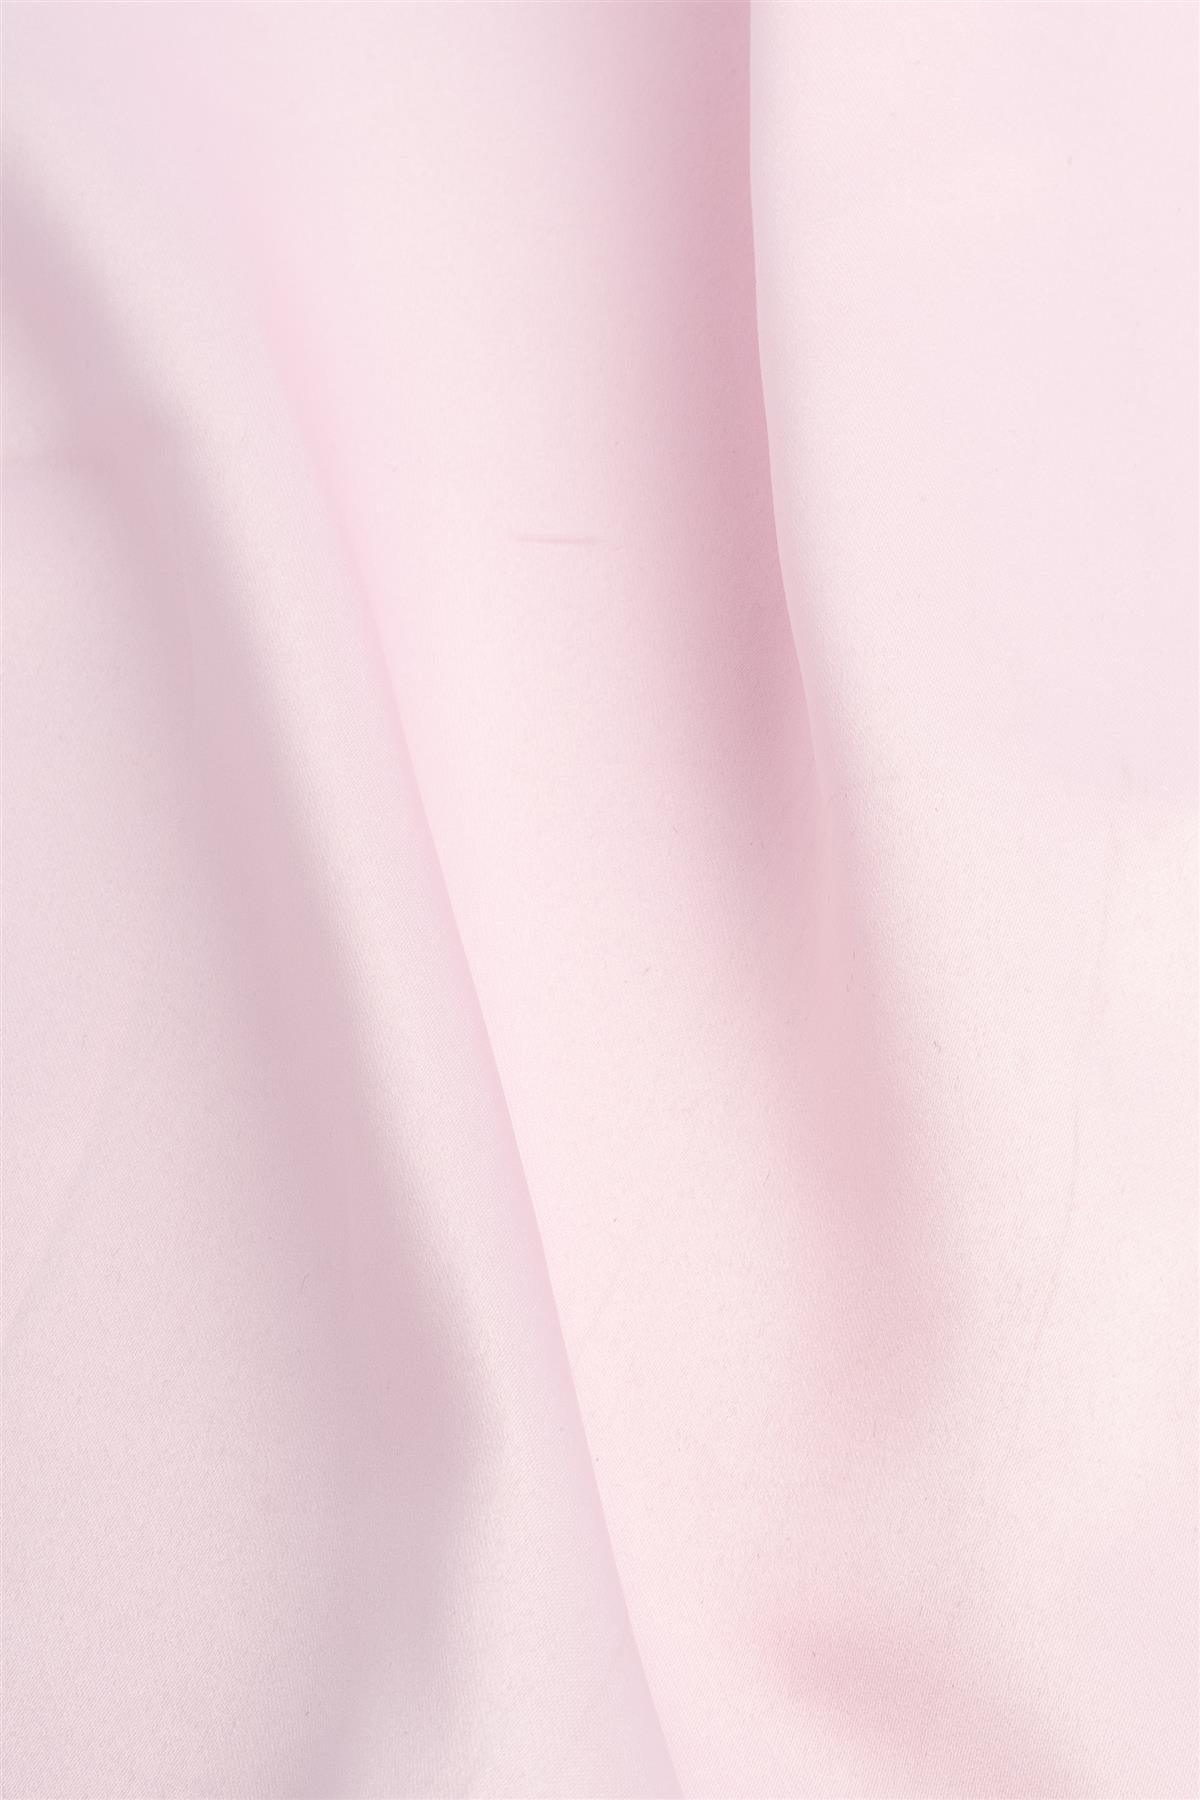 Plain pink pocket square